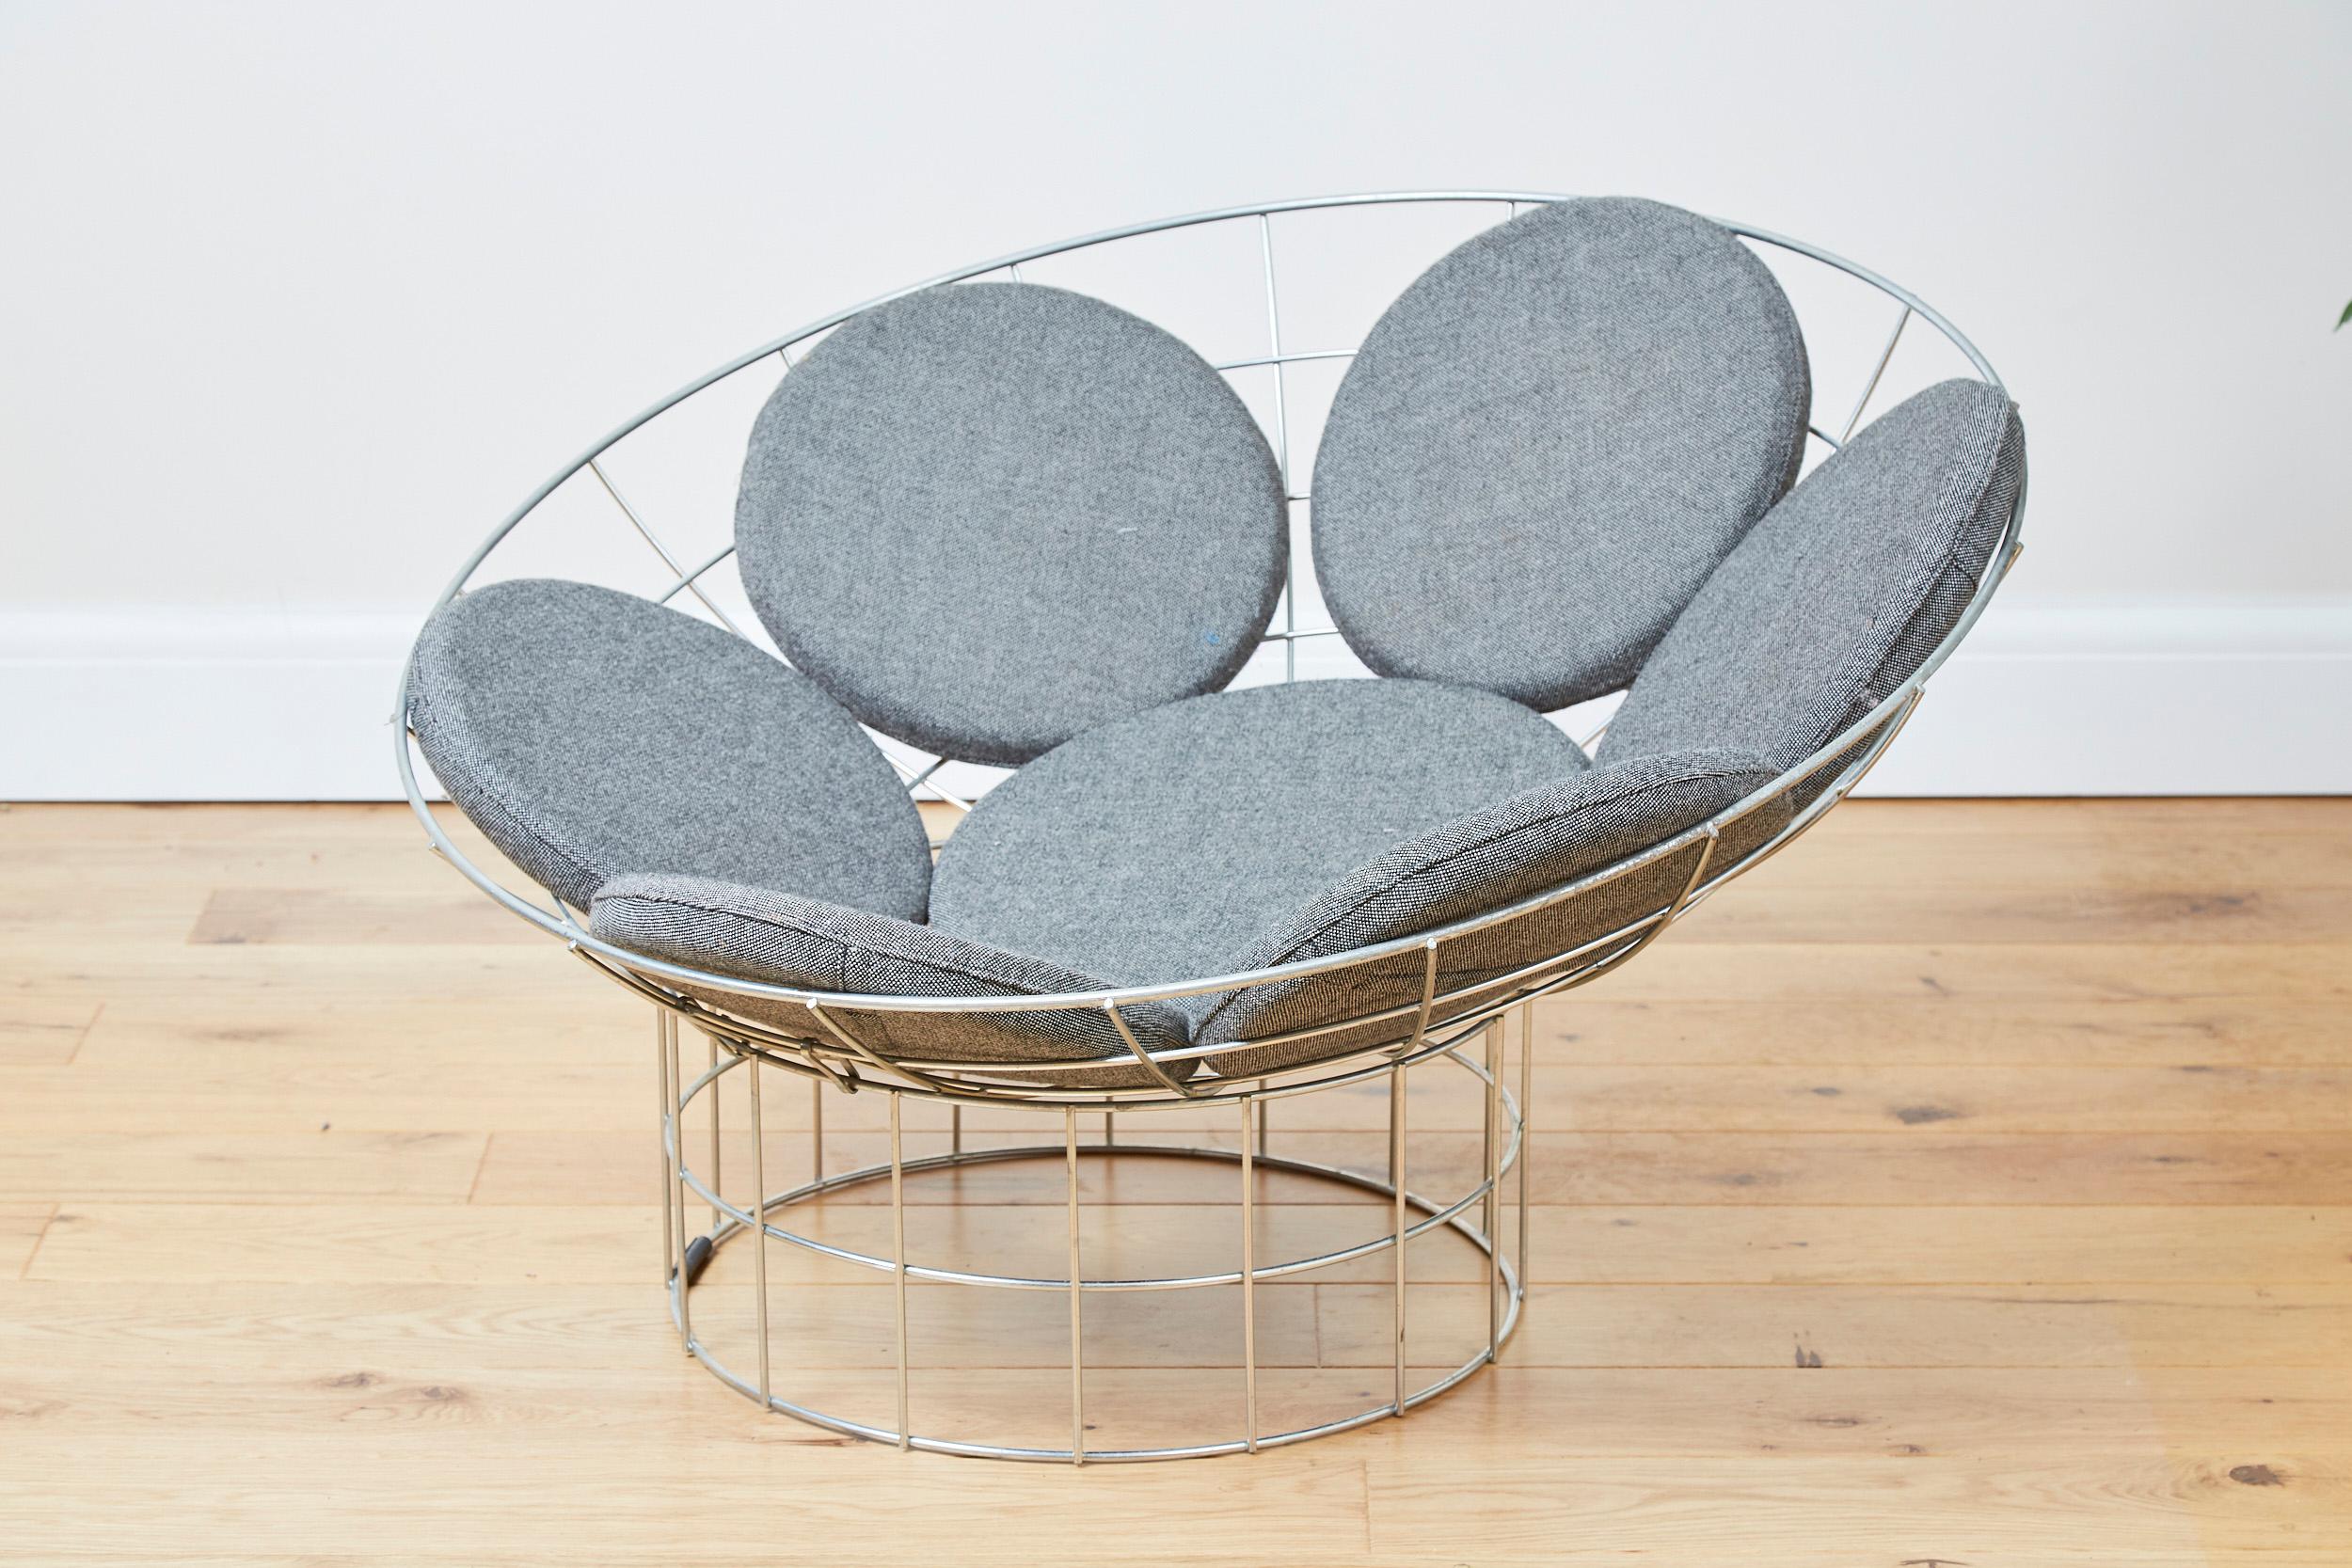 Der 1959 von Verner Panton entworfene und 1960 von Plus-Linje in Dänemark hergestellte Peacock-Stuhl ist ein Designklassiker.

Bestehend aus einem schalenförmigen Oberteil und einem zylindrischen Fuß aus rostfreiem Stahl.
Die beiden Teile können